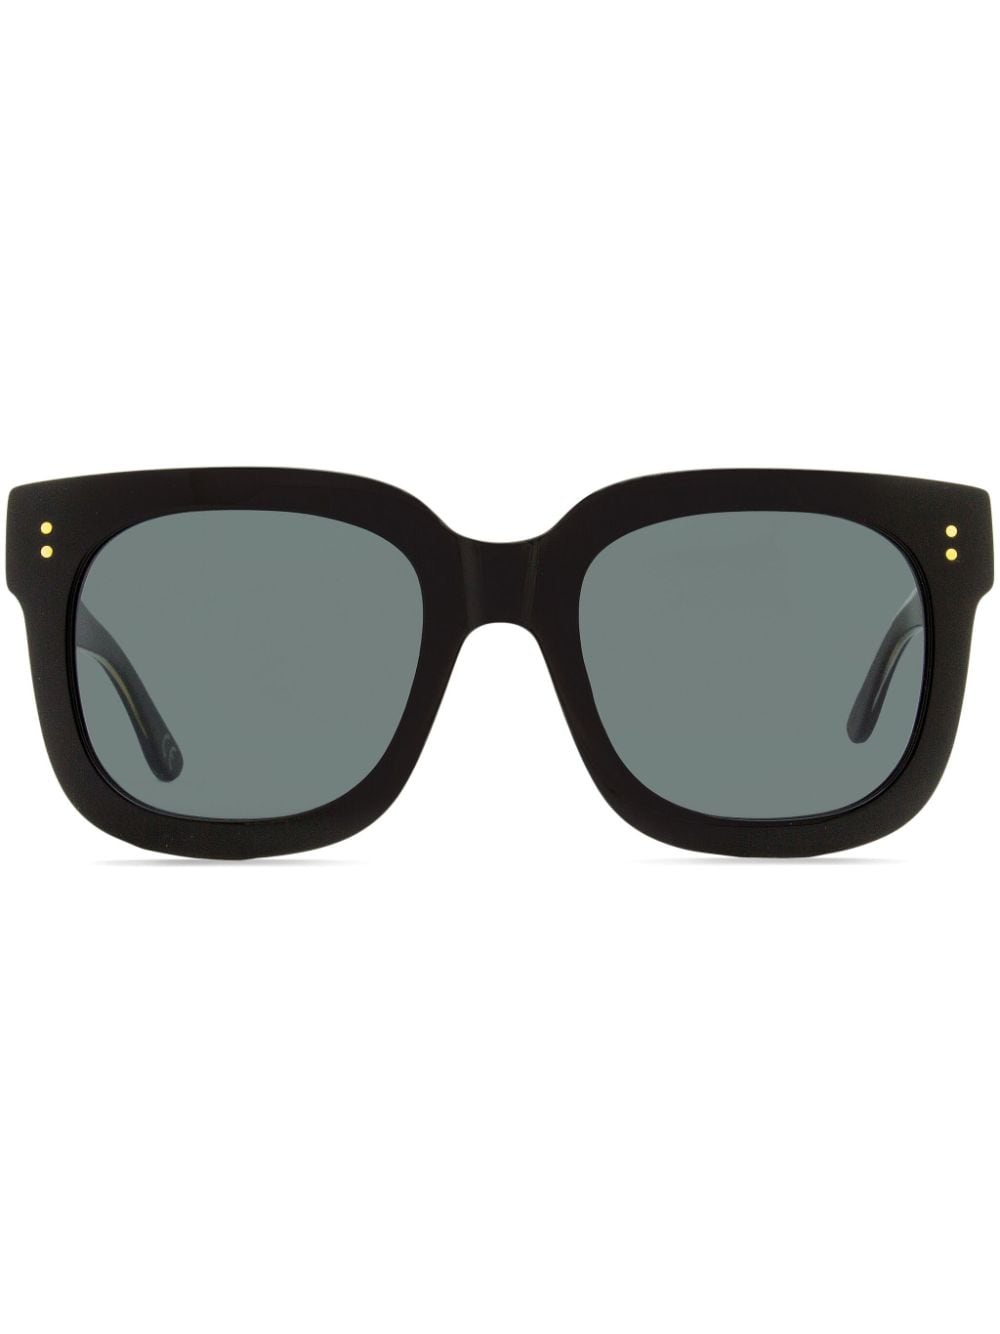 Marni Eyewear Li River Sonnenbrille mit Oversized-Gestell - Schwarz von Marni Eyewear